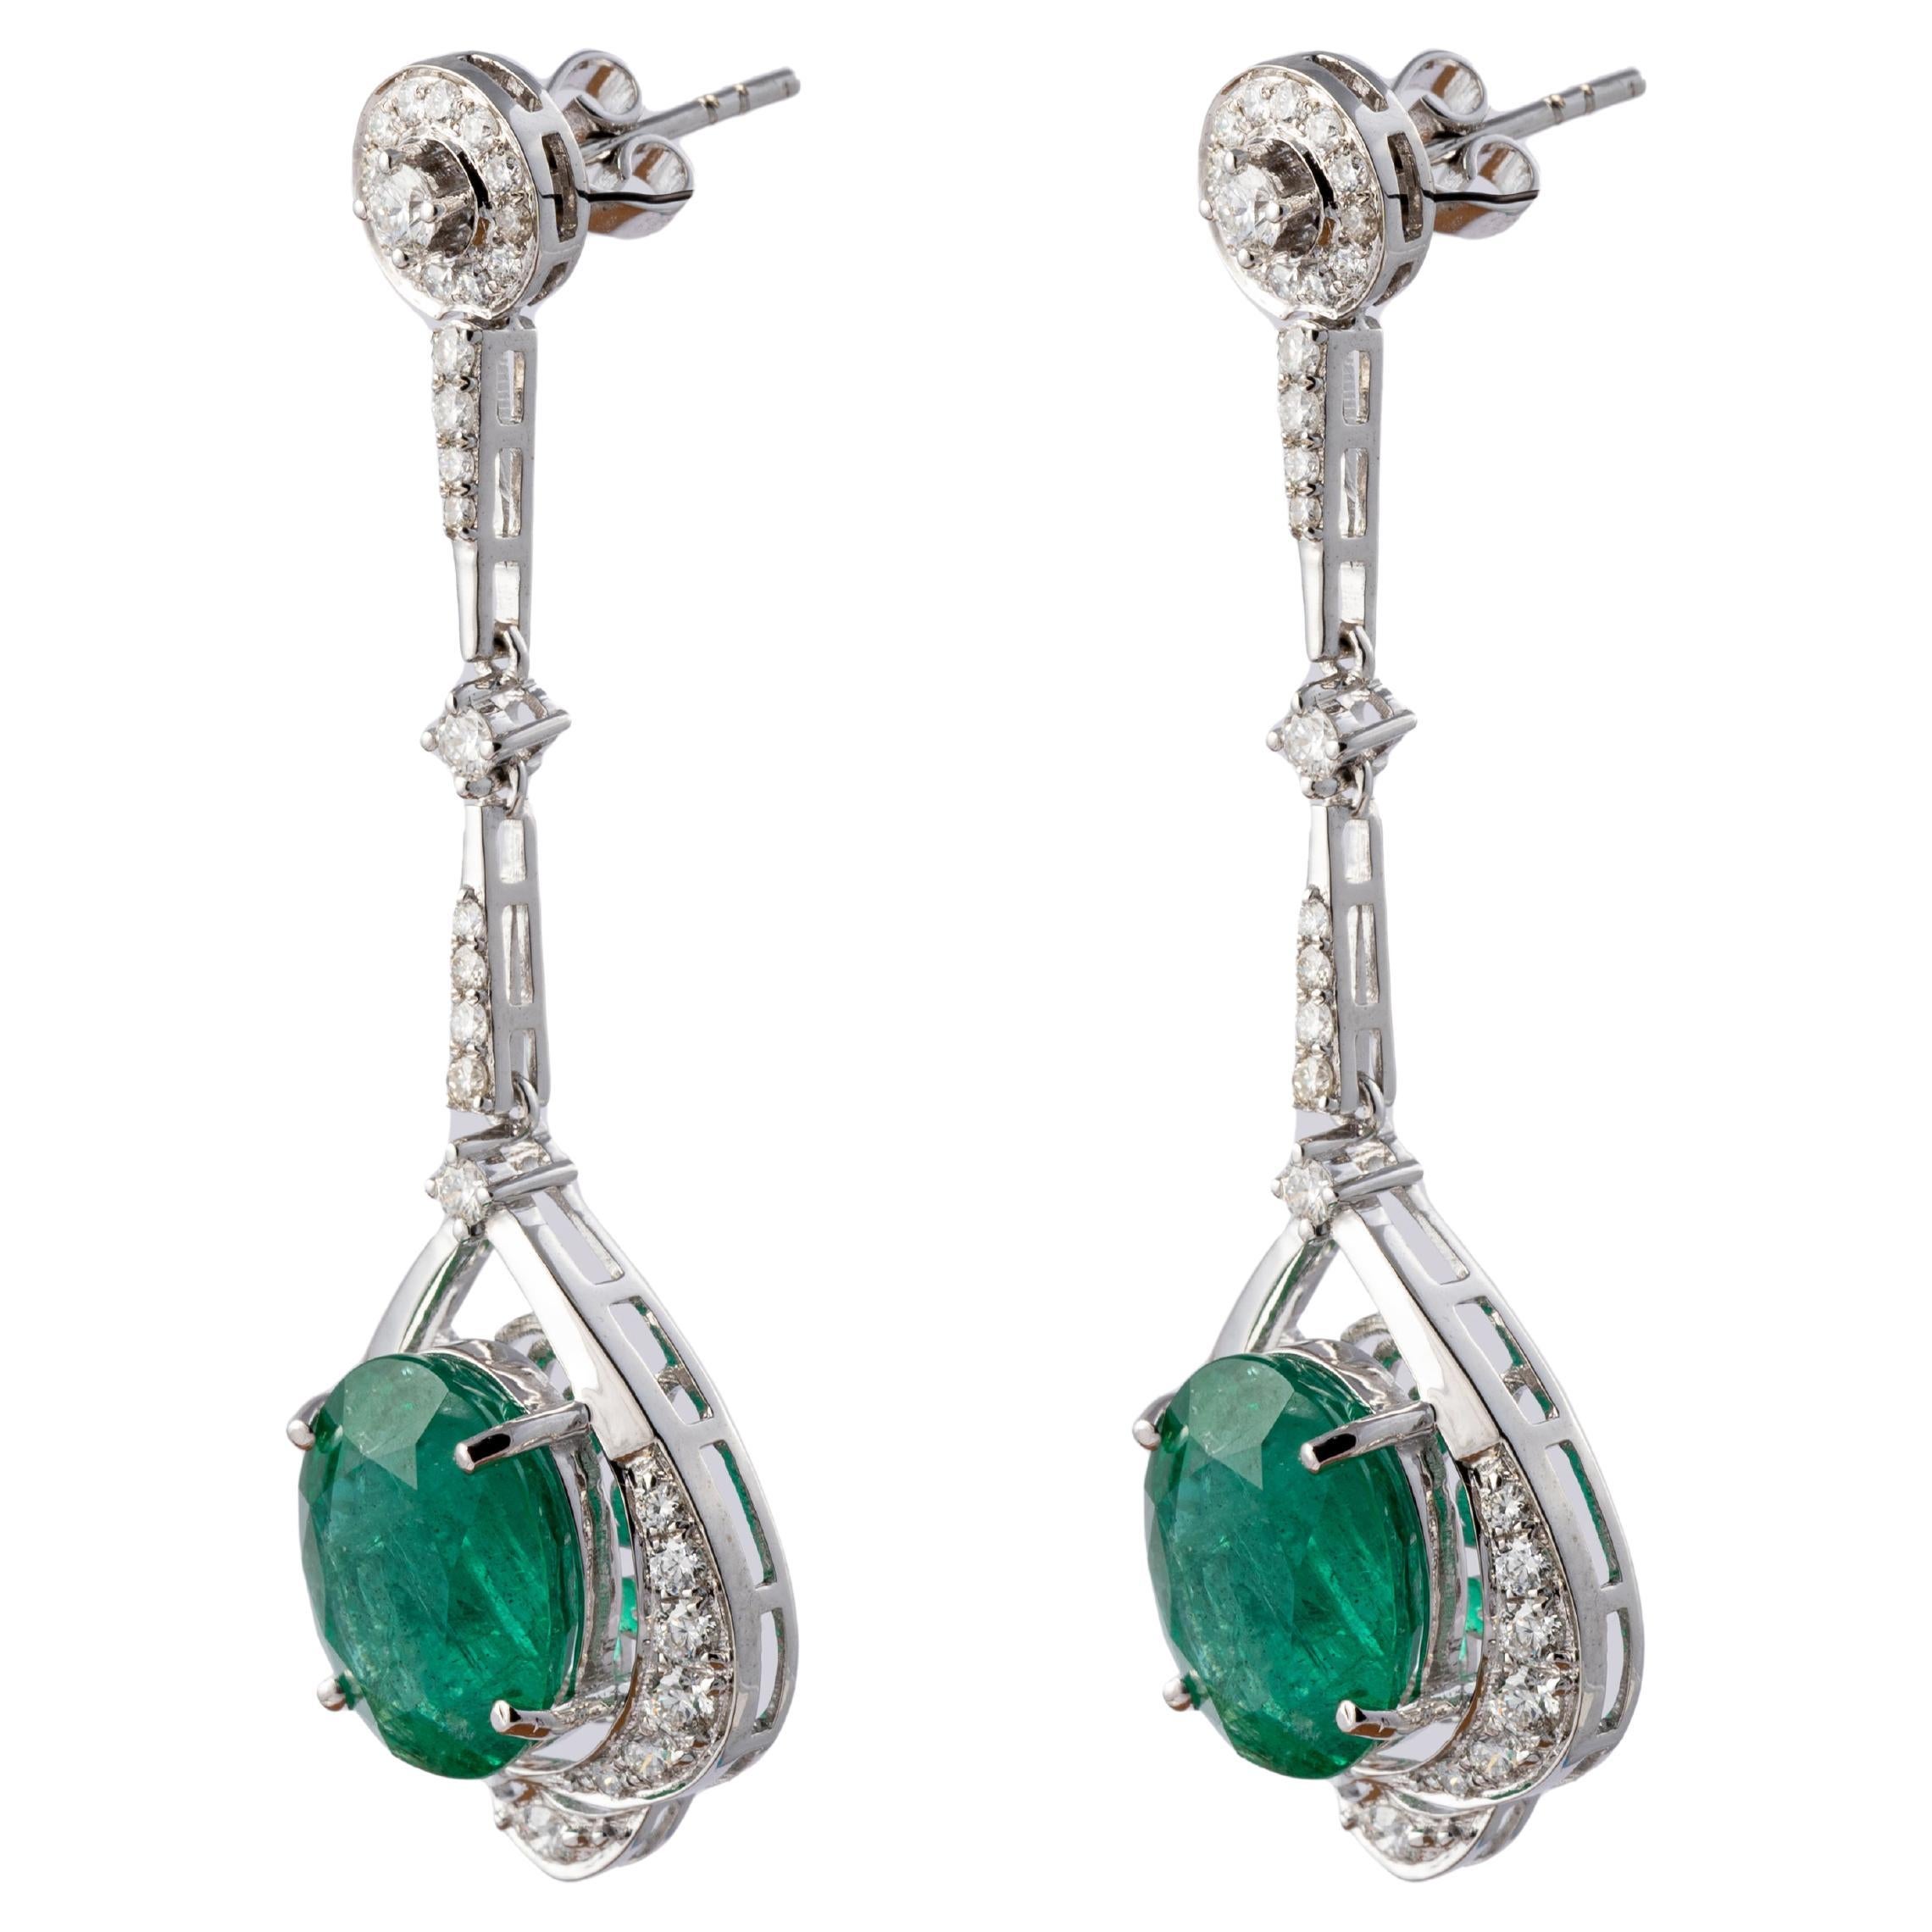 Natürliche sambischer Smaragd-Ohrringe mit Diamanten und 14k Gold